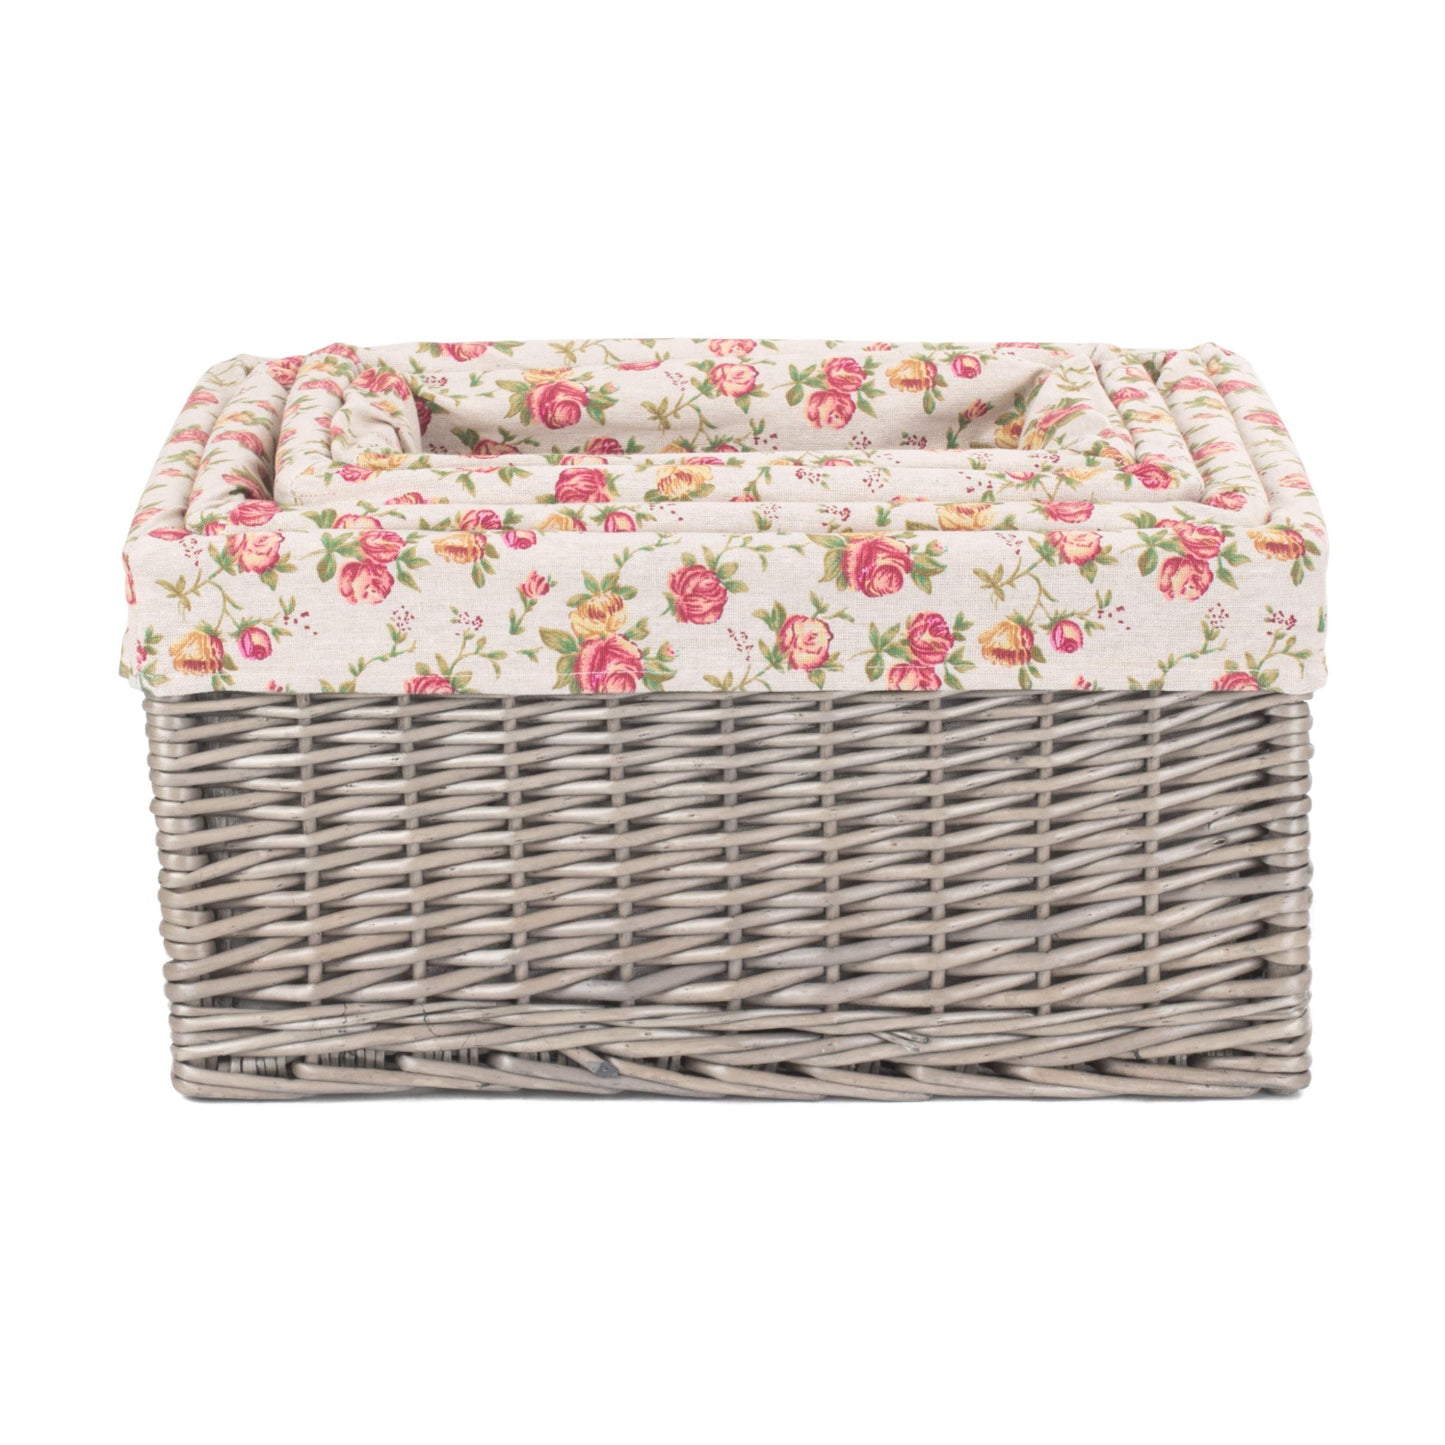 Antique Wash Garden Rose Lined Storage Basket Set 4